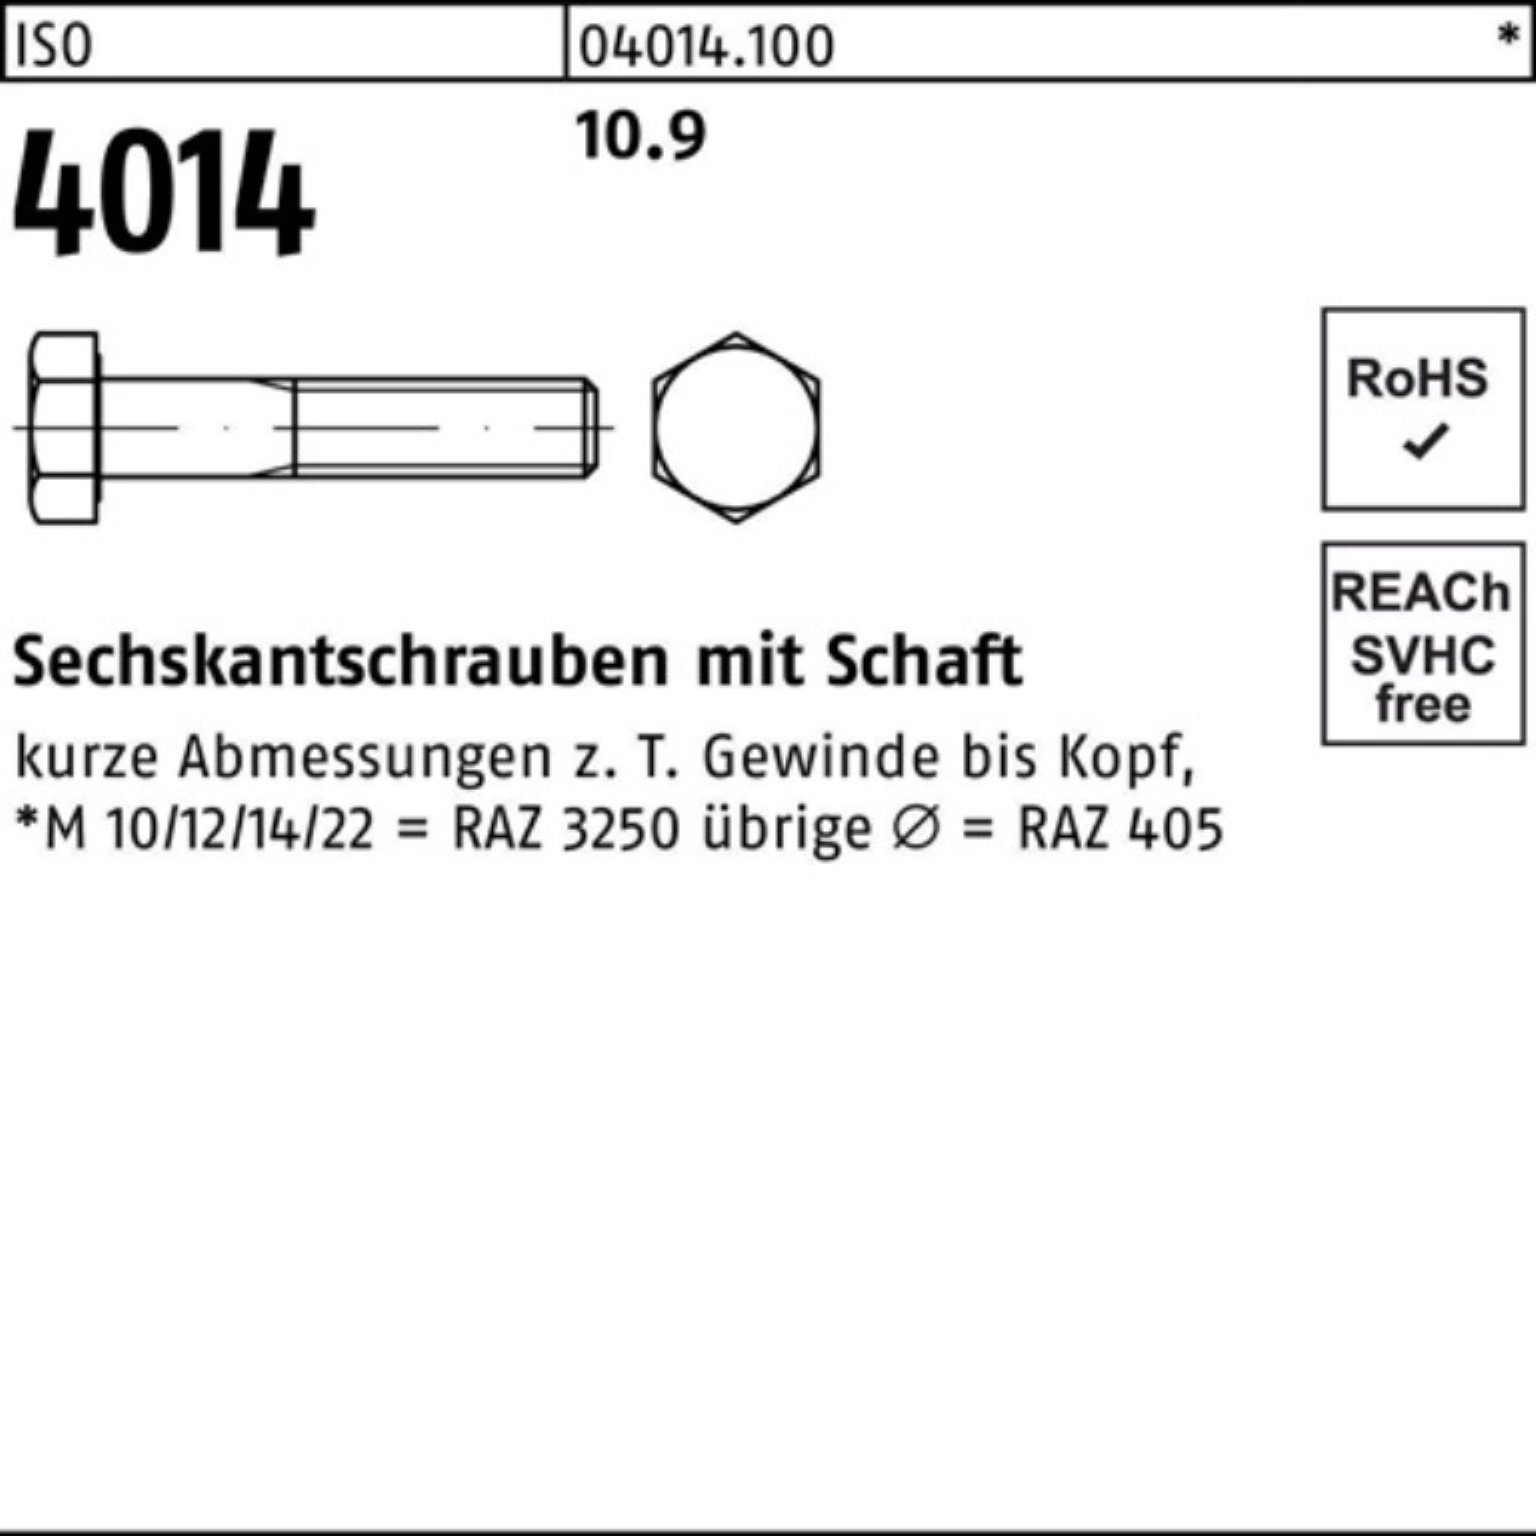 270 Sechskantschraube Sechskantschraube M36x 4014 Schaft Stück Pack Bufab ISO 1 10.9 100er IS